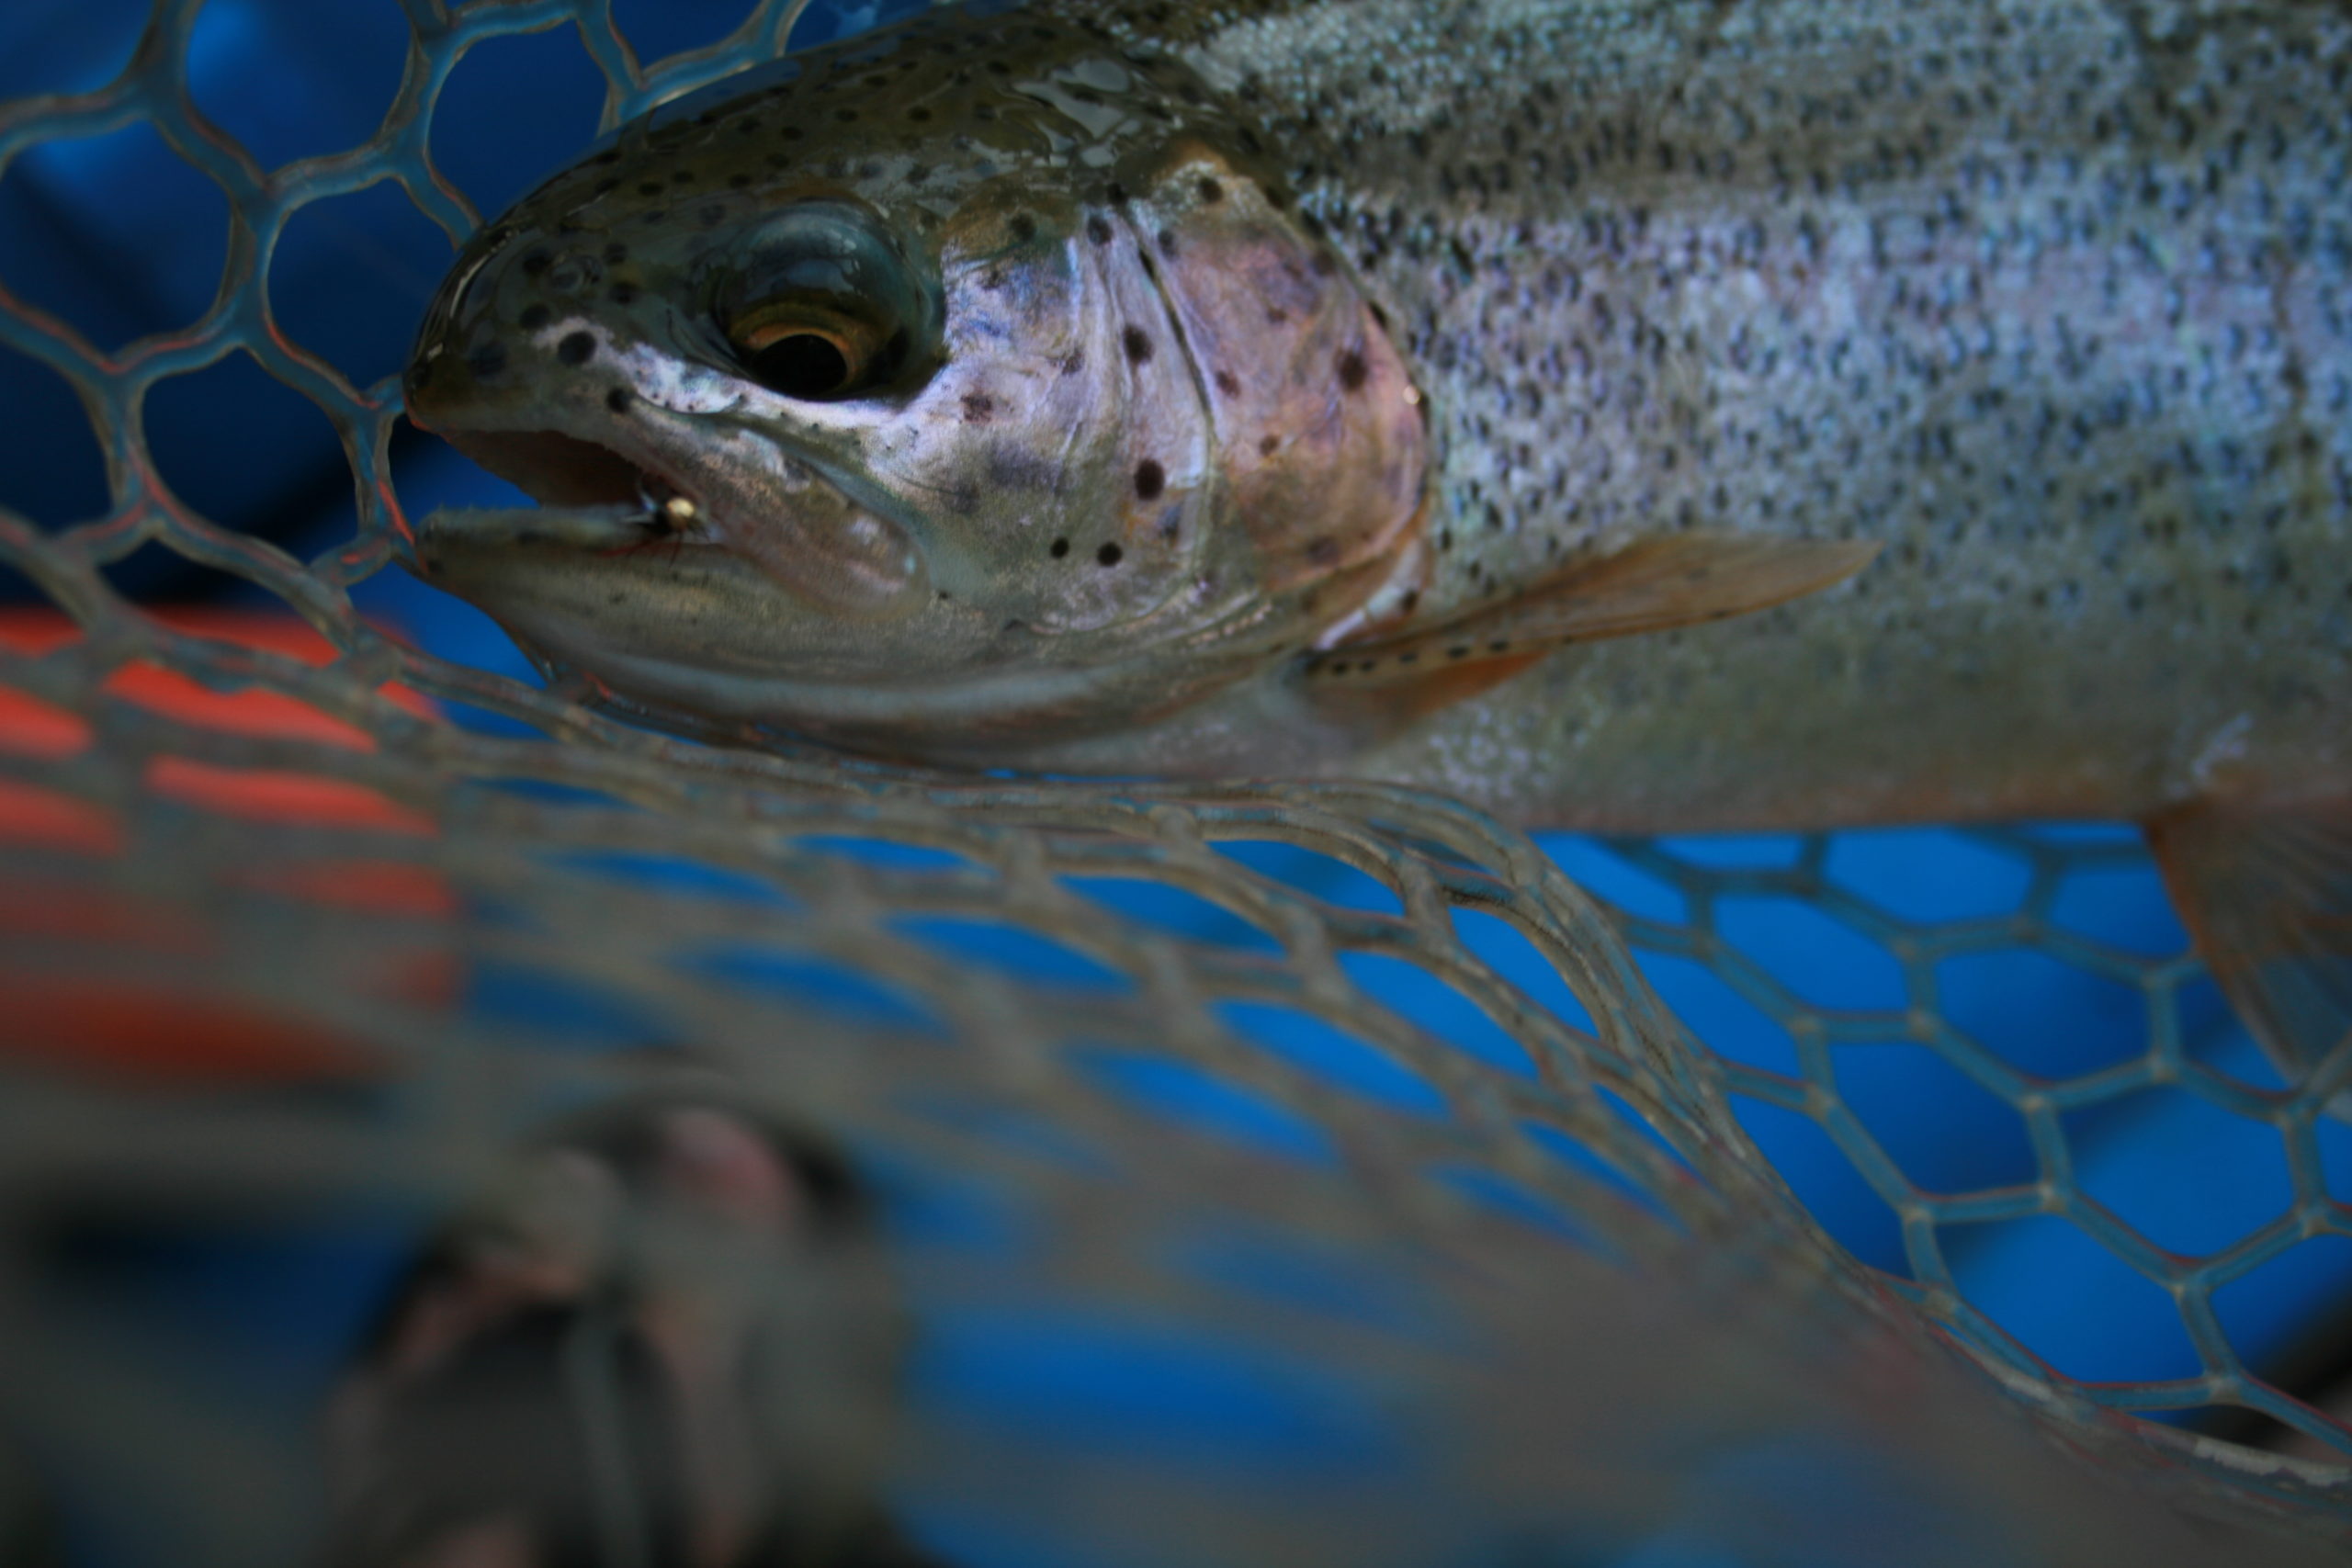 A trout caught in Aspen Colorado river